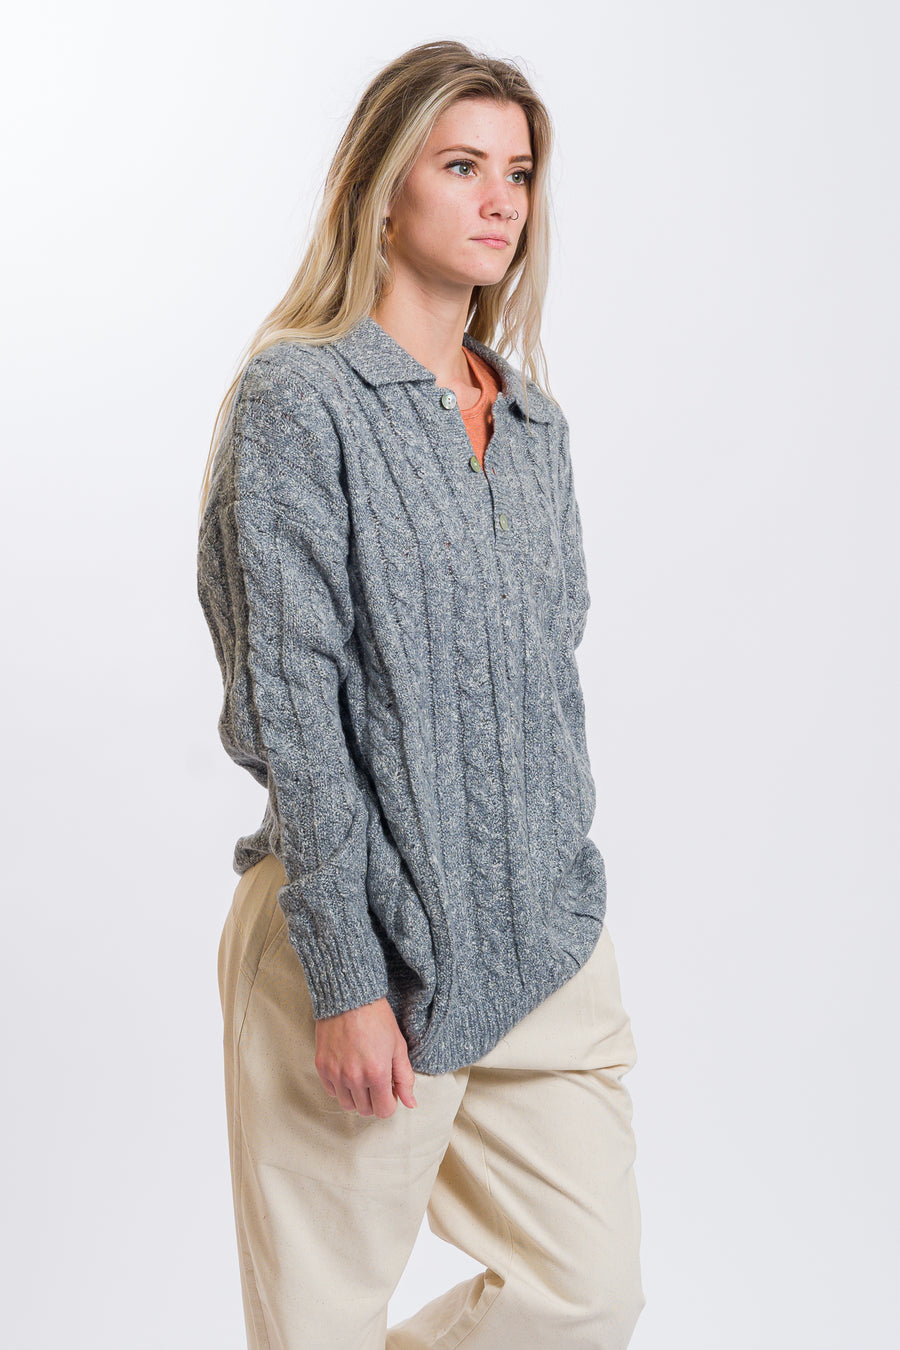 Volcom Low Low Polo Sweater - Daze Grey